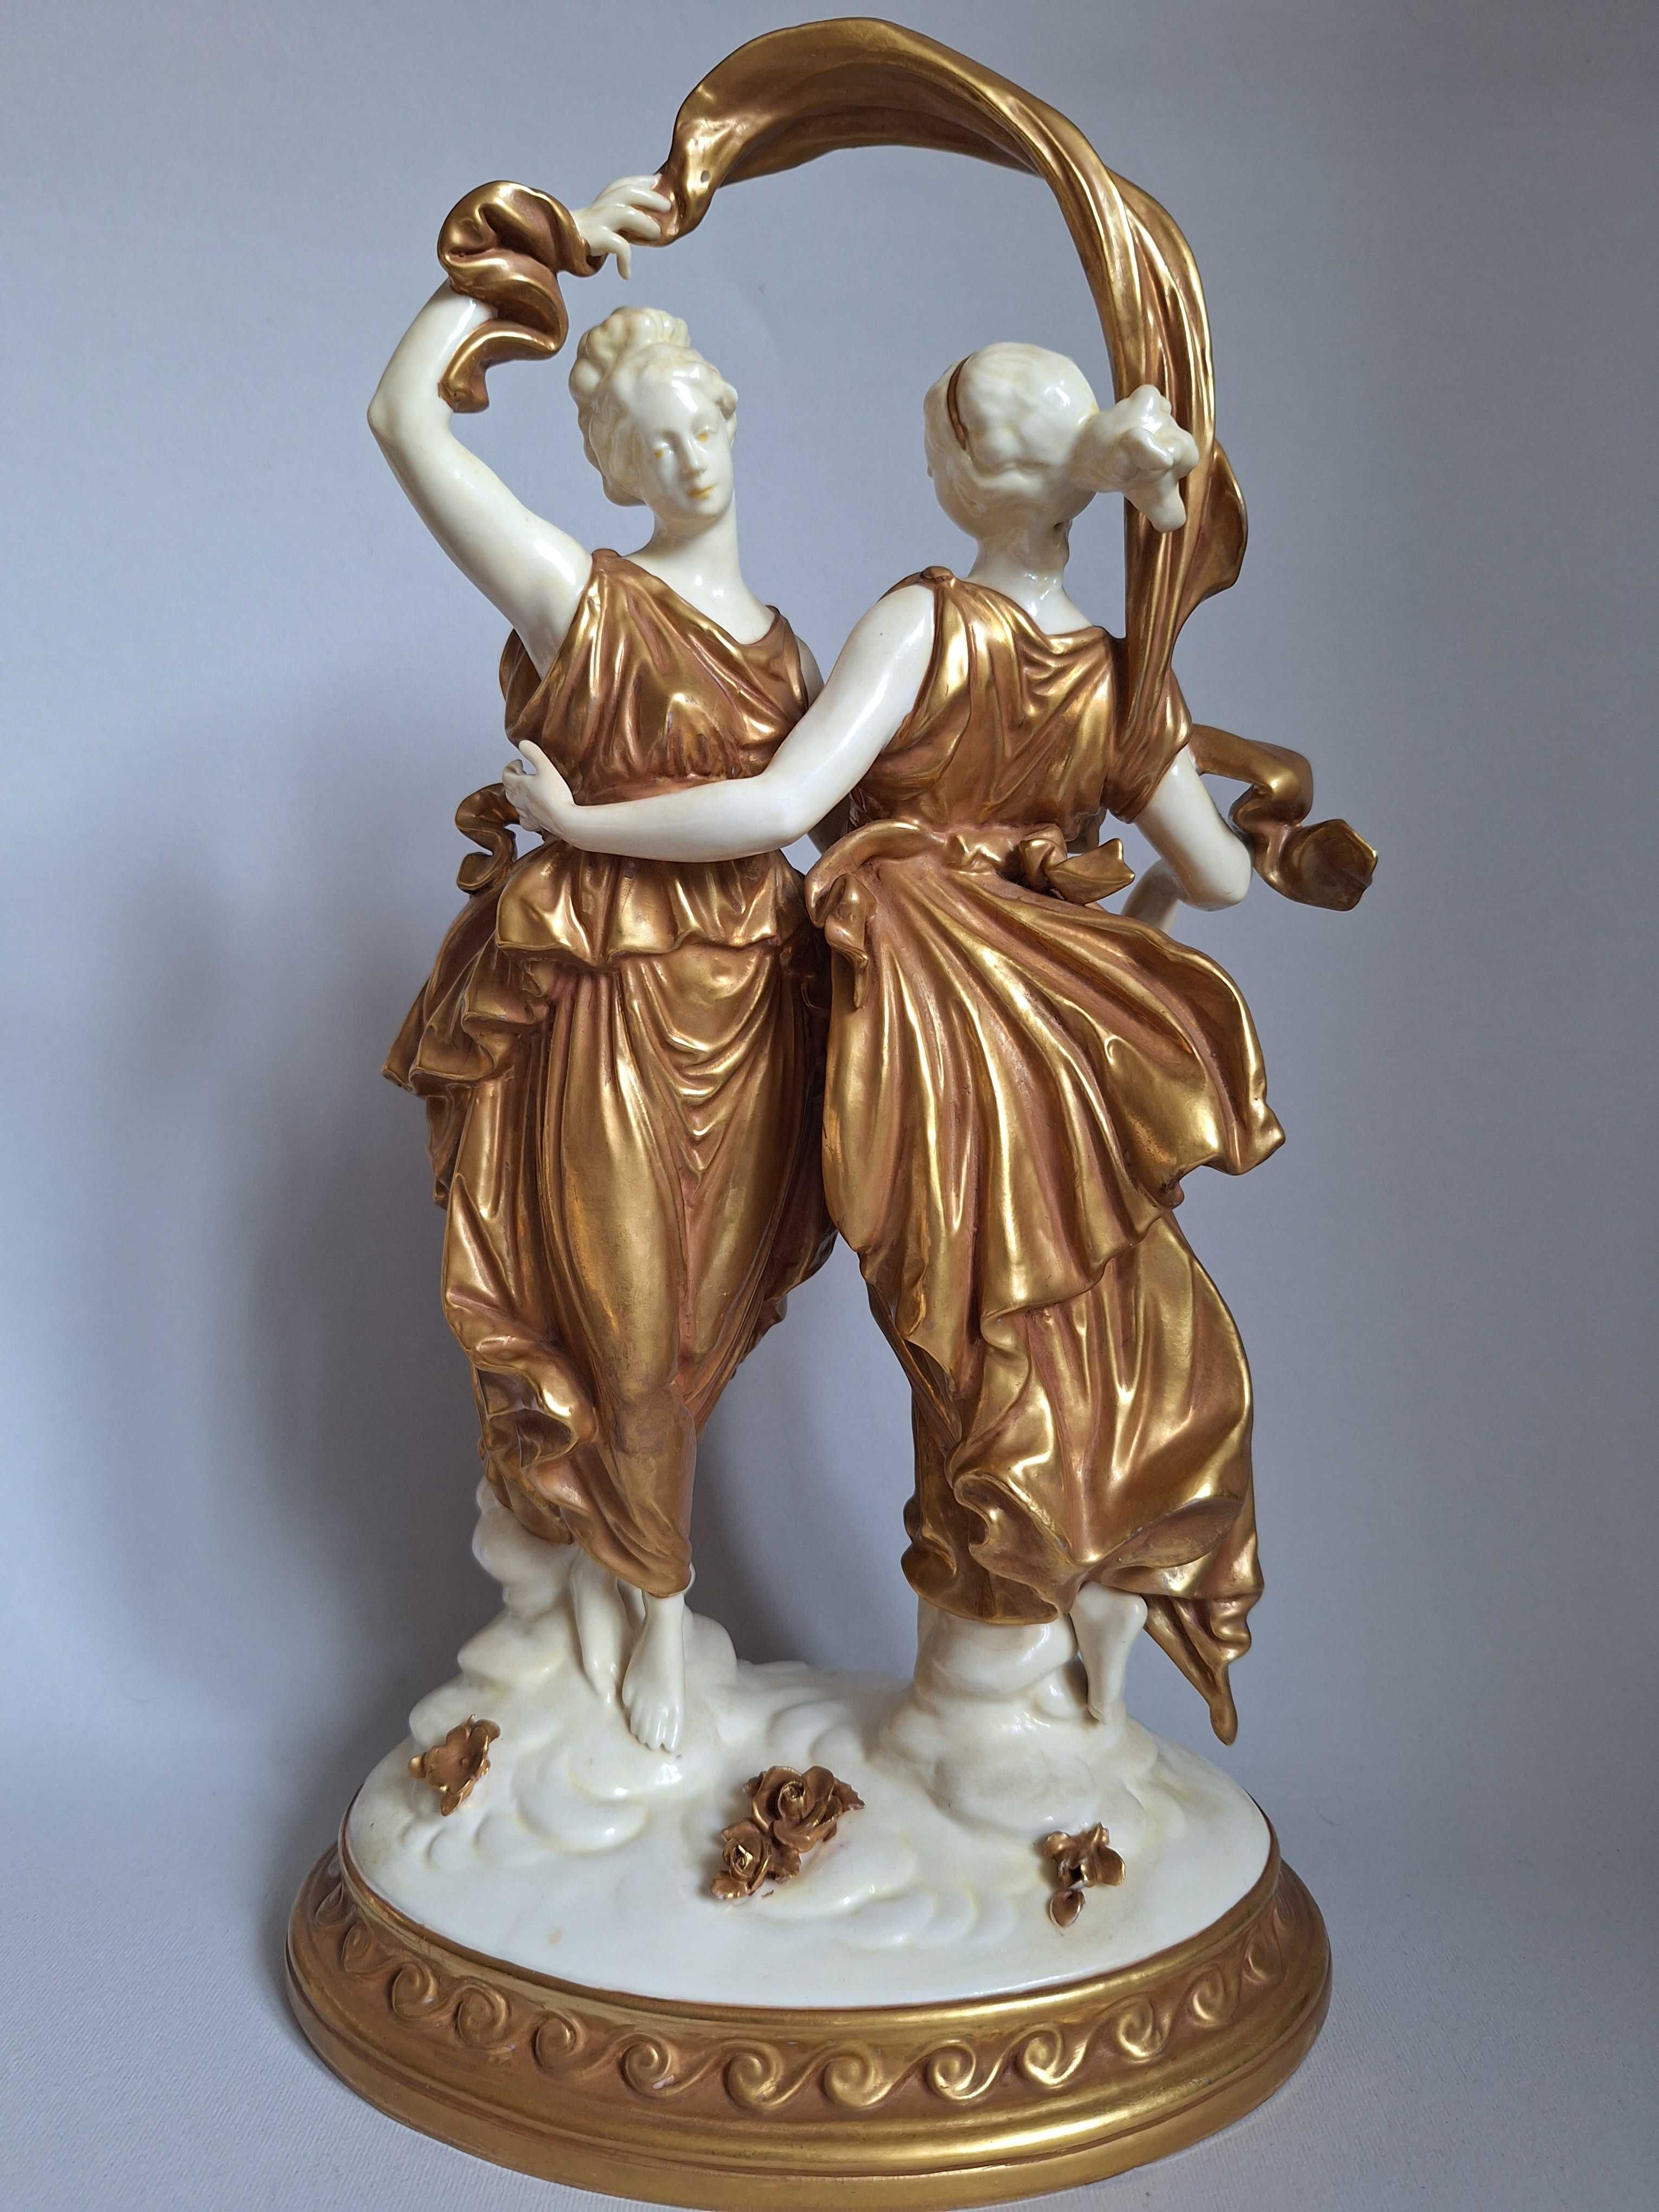 Volkstedt.Фарфоровая статуэтка двух танцовщиц в золотых платьях.